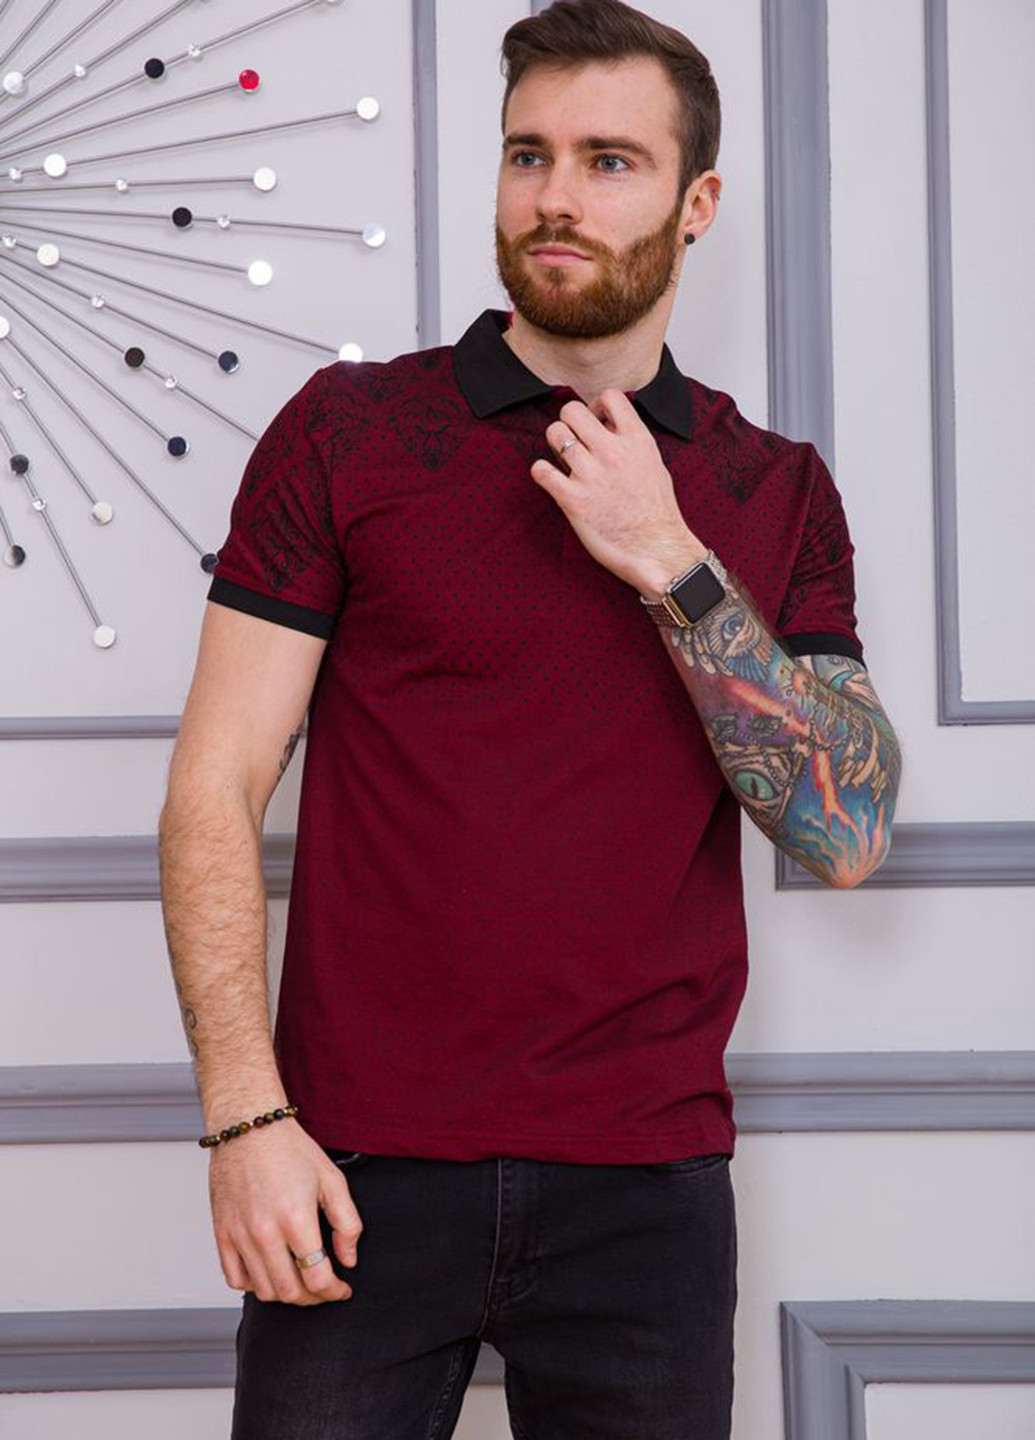 Бордовая футболка-поло для мужчин Ager с геометрическим узором